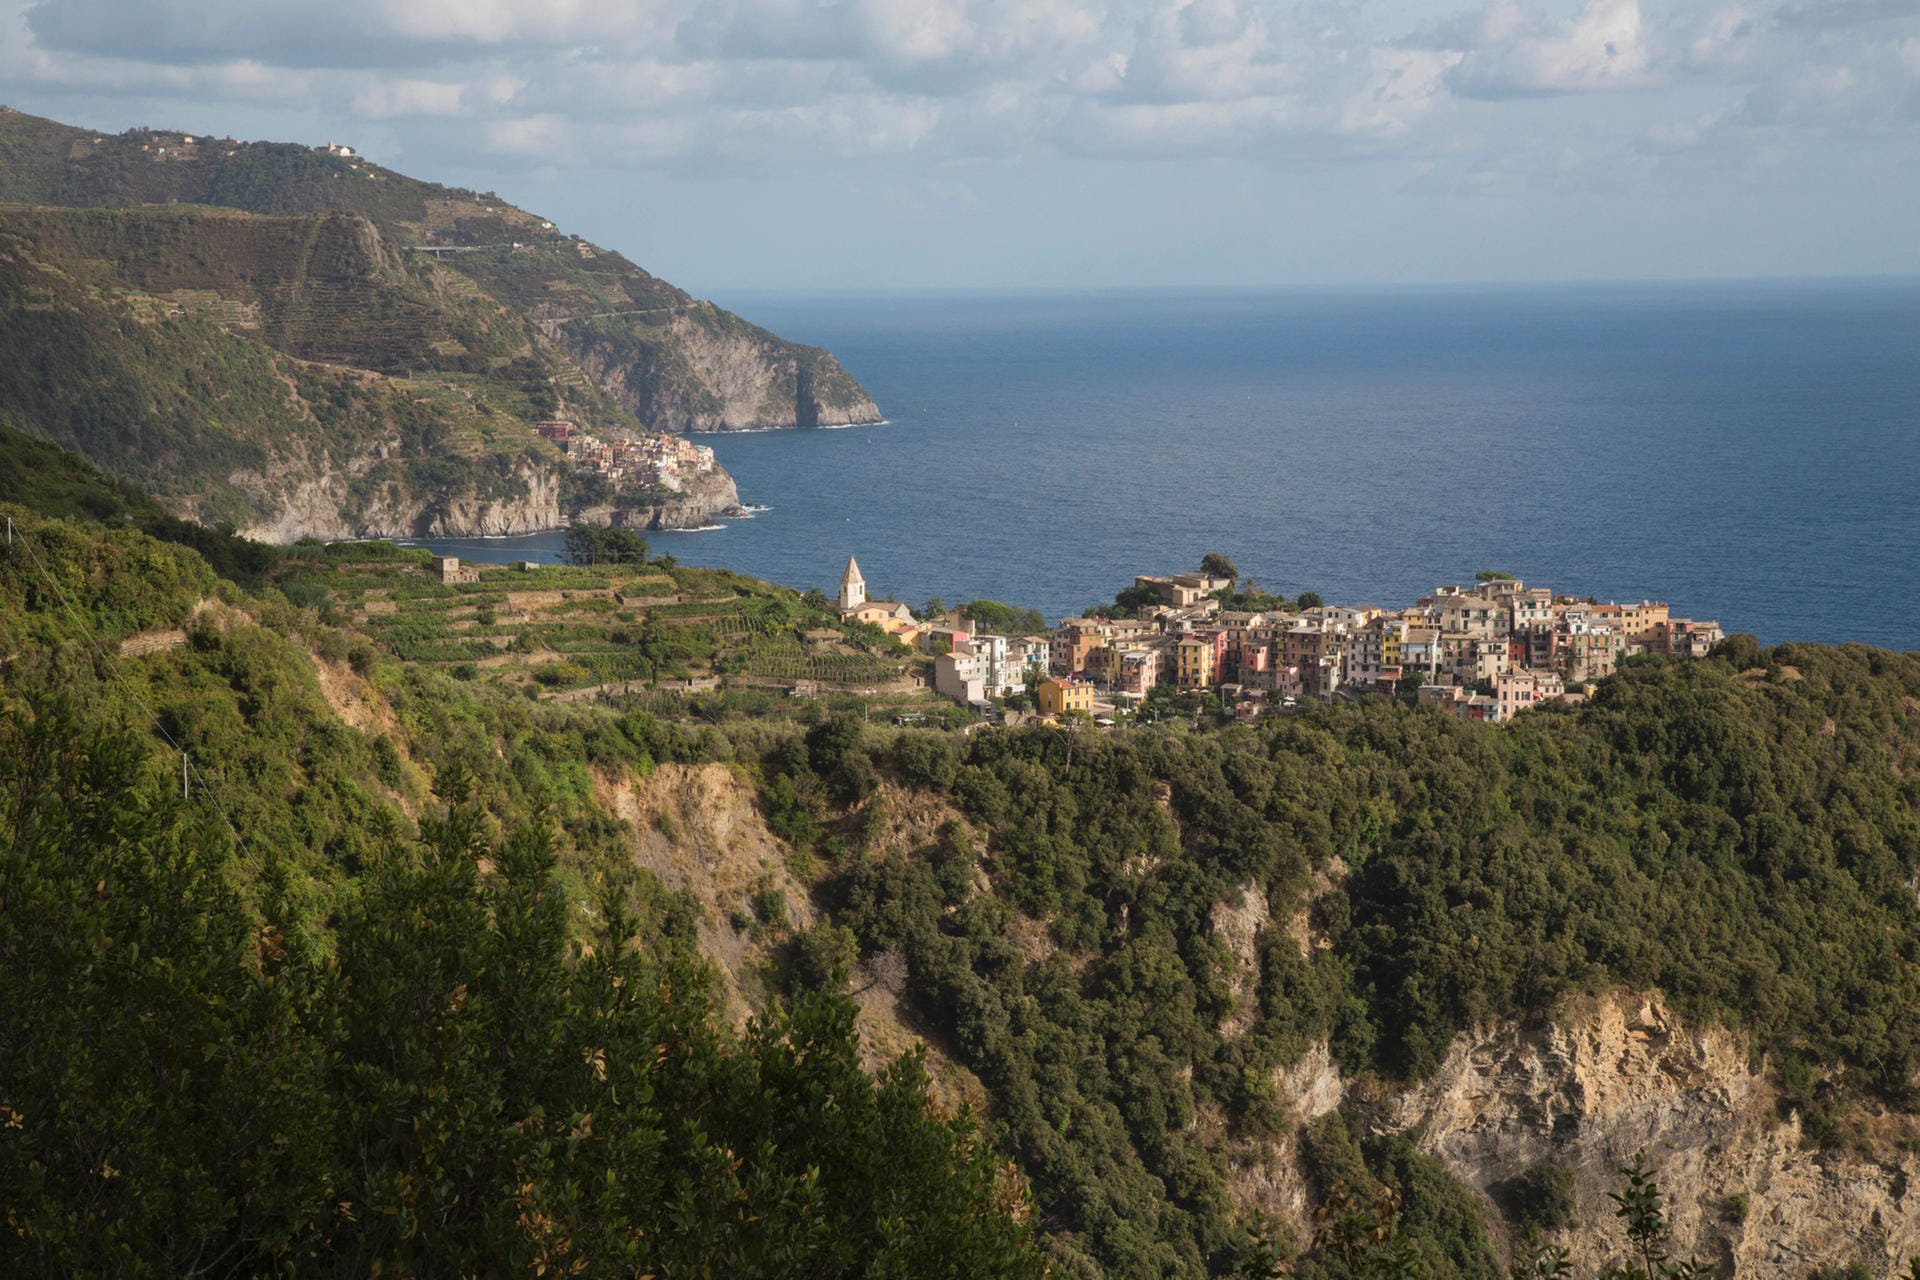 Corniglia ist das einzige der fünf Dörfer, das nicht direkt am Meer liegt. Es befindet sich auf einem Felsvorsprung.